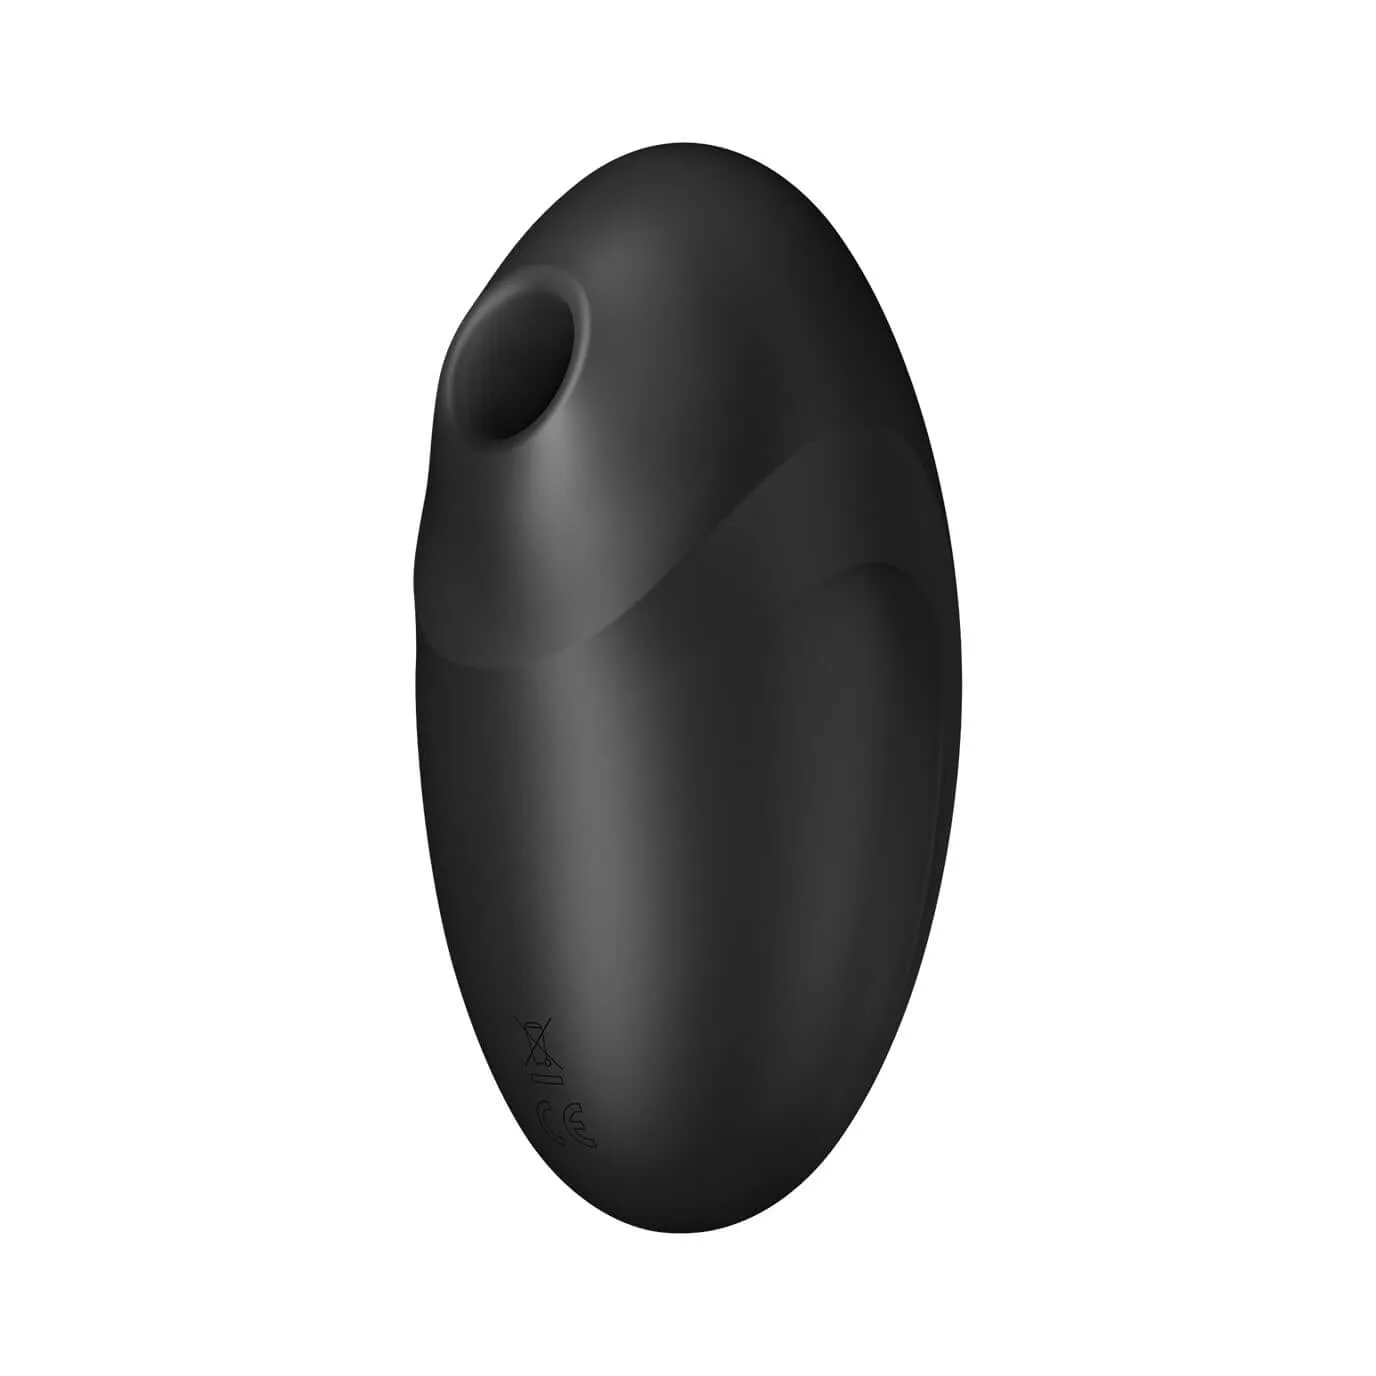 Dvojitý vibrátor navržený pro maximální potěšení Vašeho klitorisu pomocí dvou stimulujících funkcí v jednom!